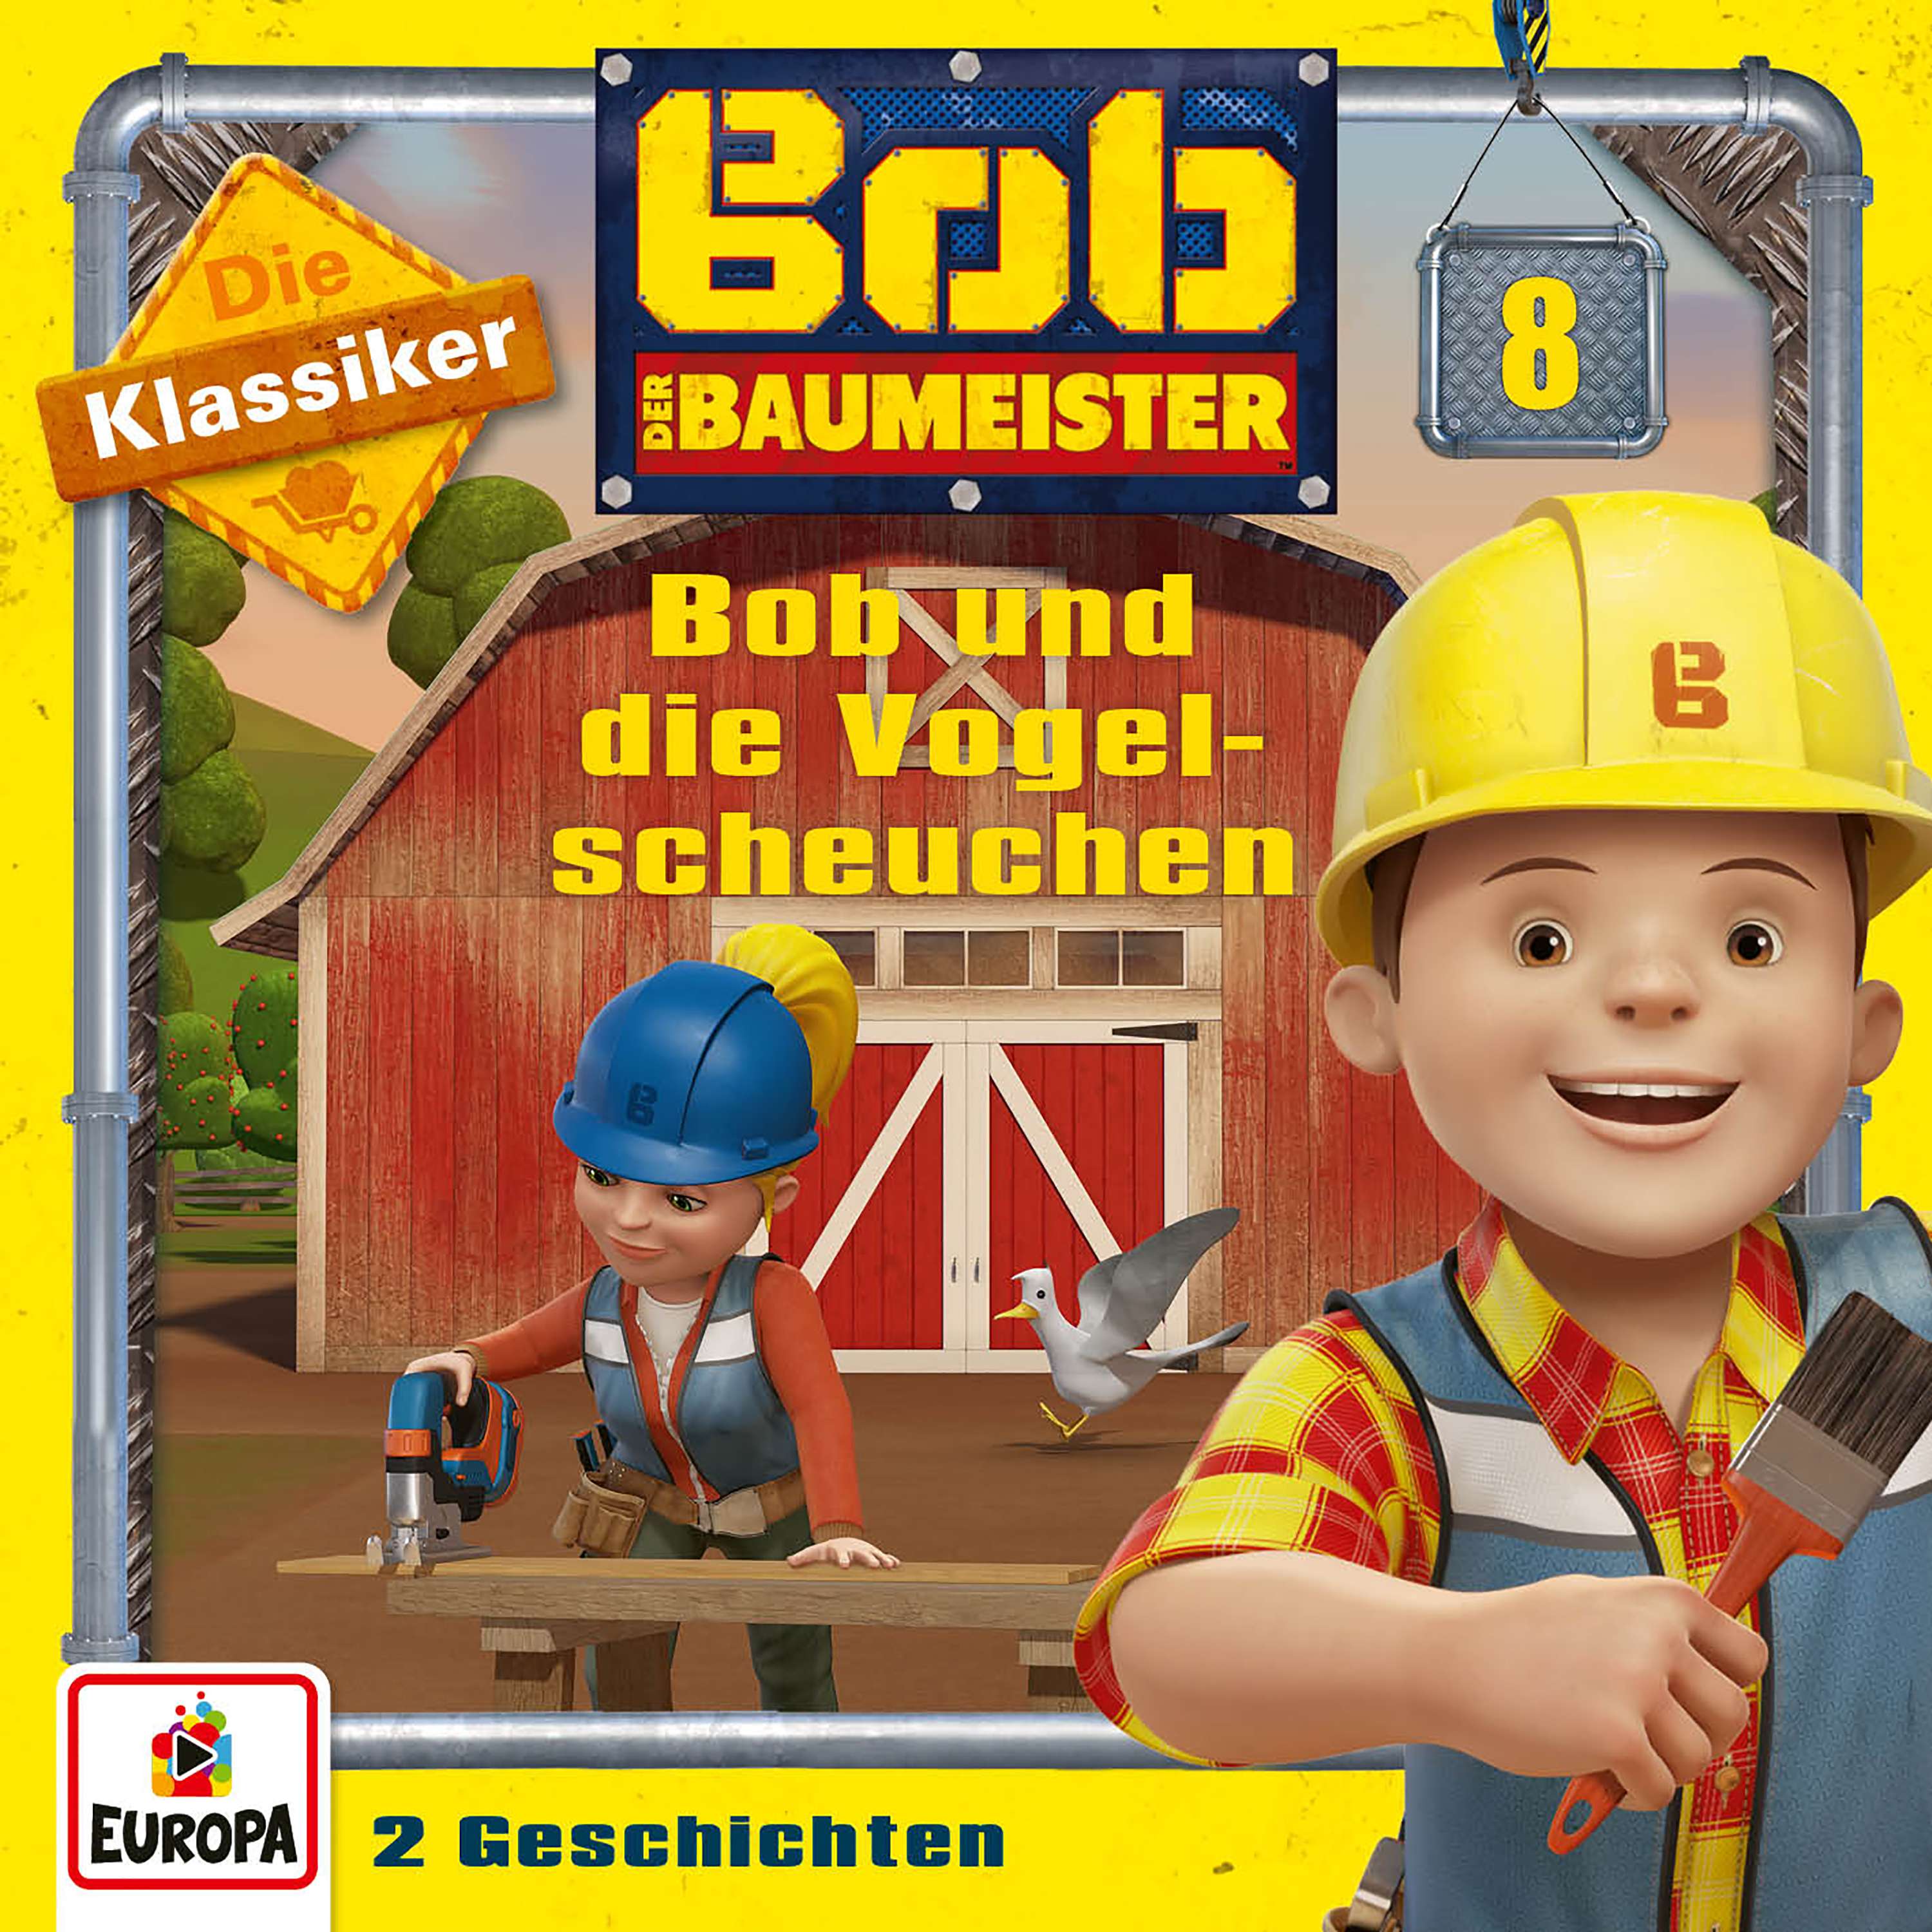 Bob der Baumeister: Bob und die Vogelscheuchen (Die Klassiker)